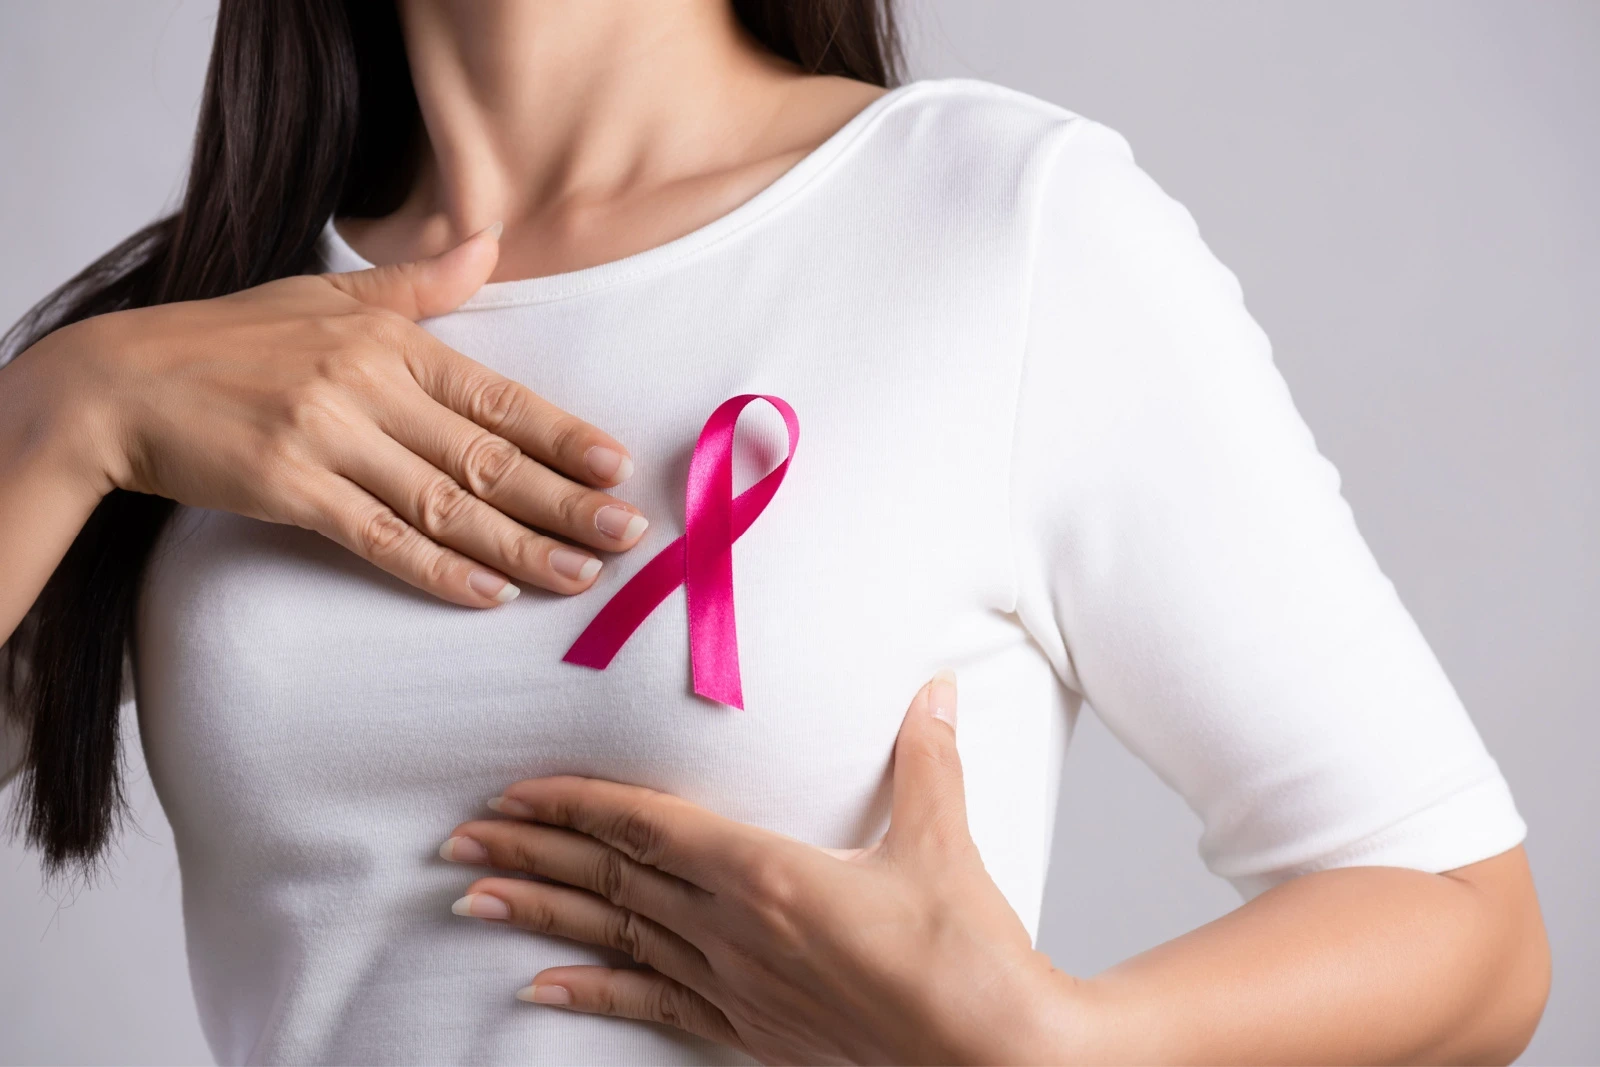 أين توجد كتلة سرطان الثدي بالصور؟